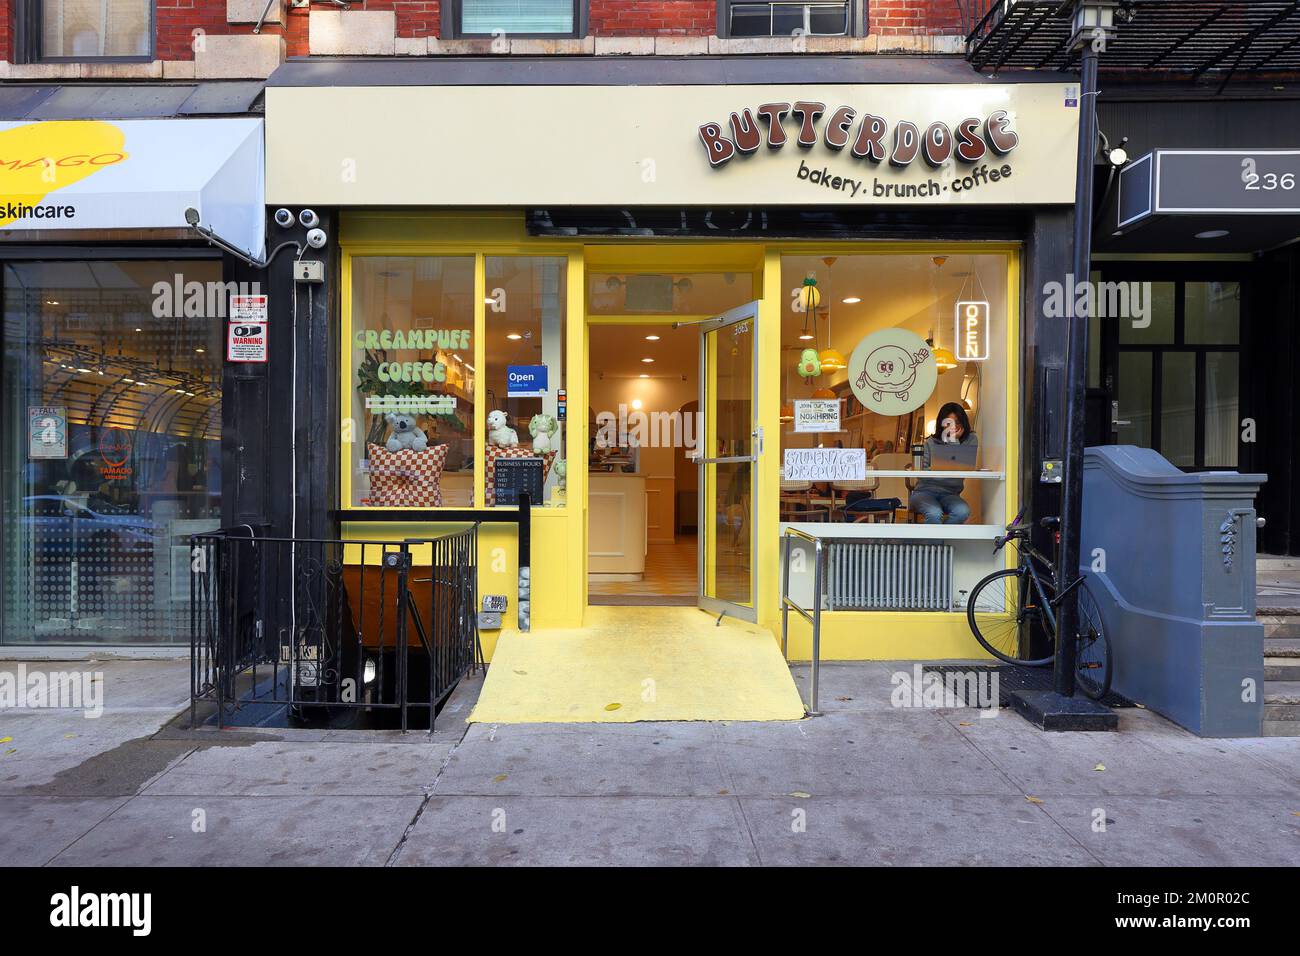 Butterdose, 236 E 13th St, Nueva York, Nueva York, Nueva York, foto de una panadería en el barrio East Village de Manhattan. Foto de stock